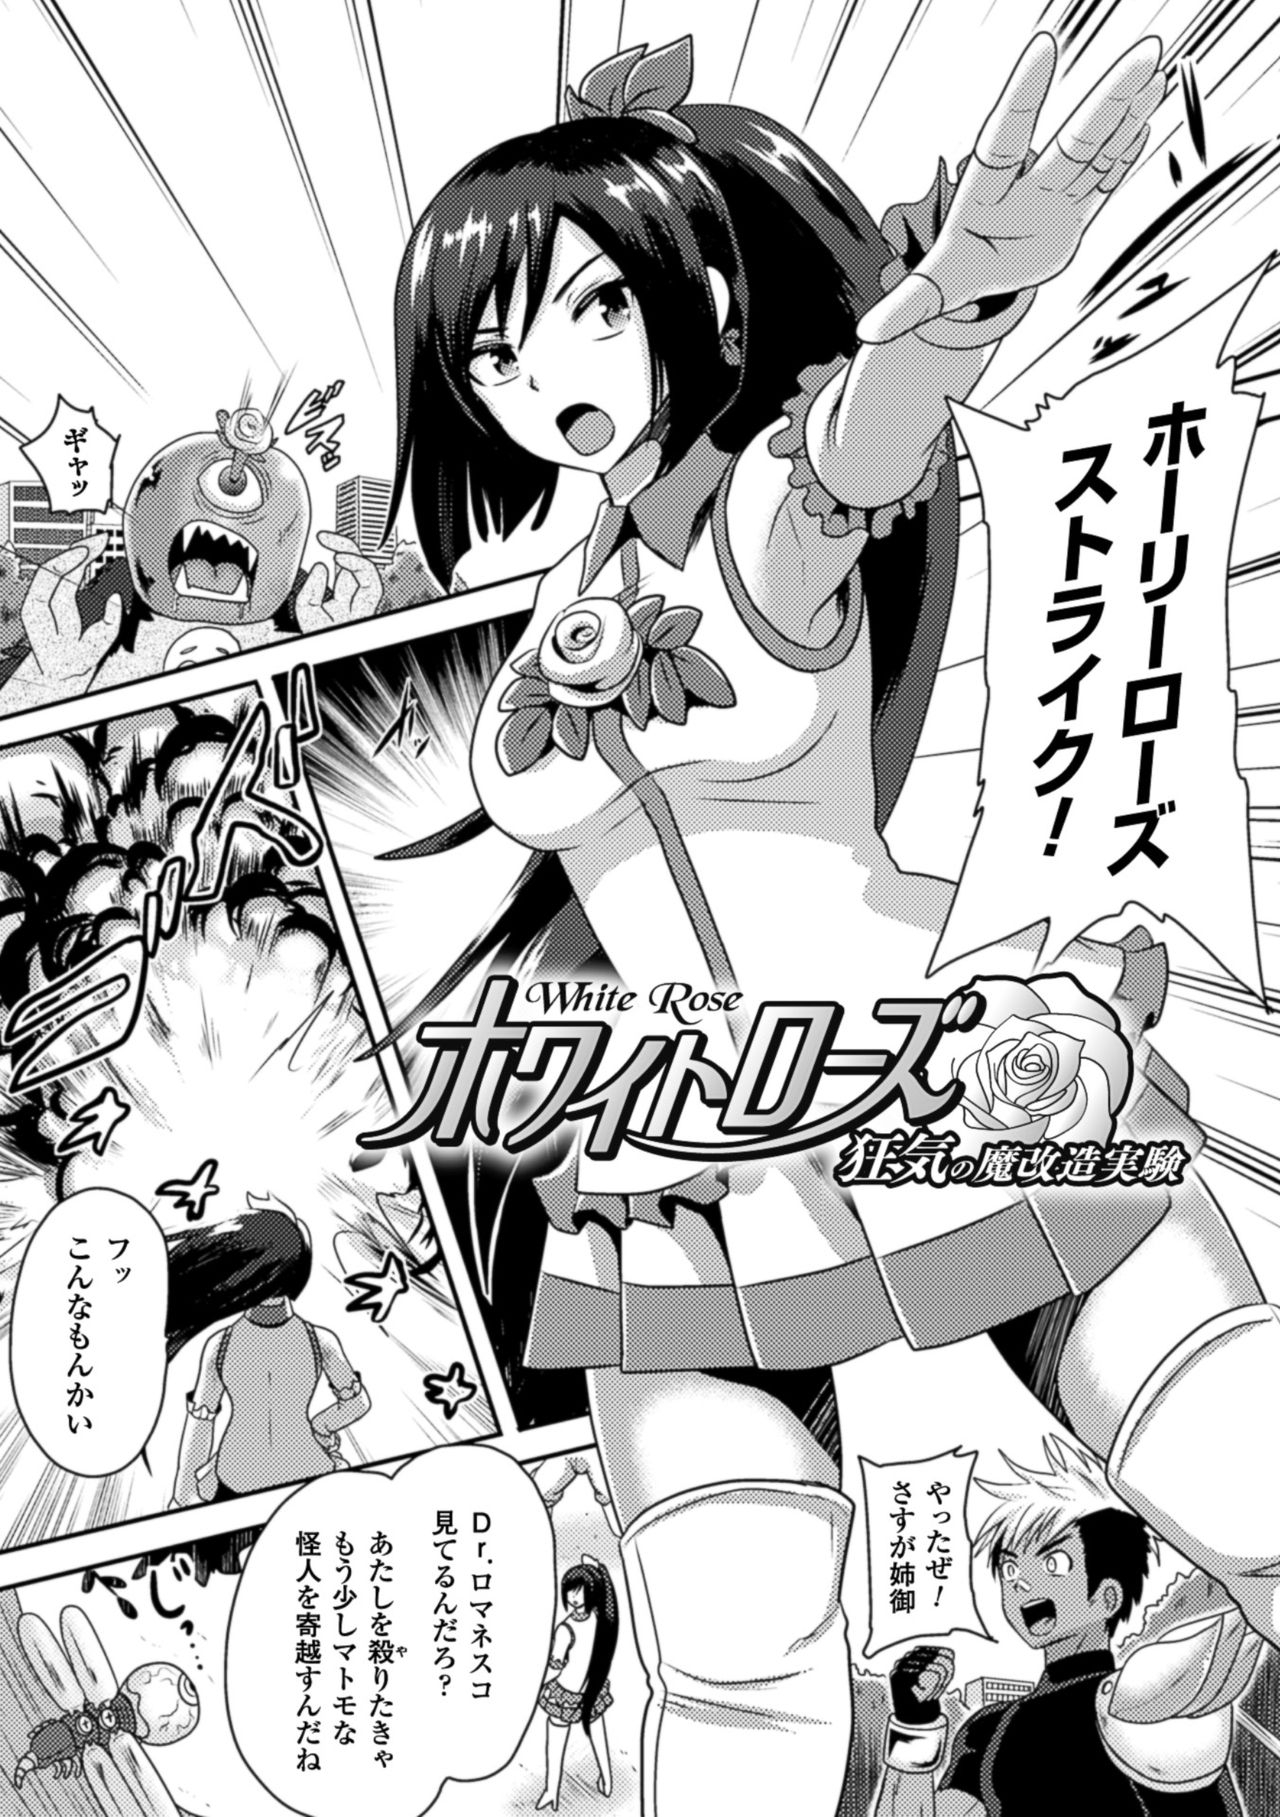 [Akuochisukii Sensei] Akuochisukii Sensei no Heroine Haiboku no Houteishiki - Equation of Heroine's defeat by Mr. Akuochisukii [Digital] 48